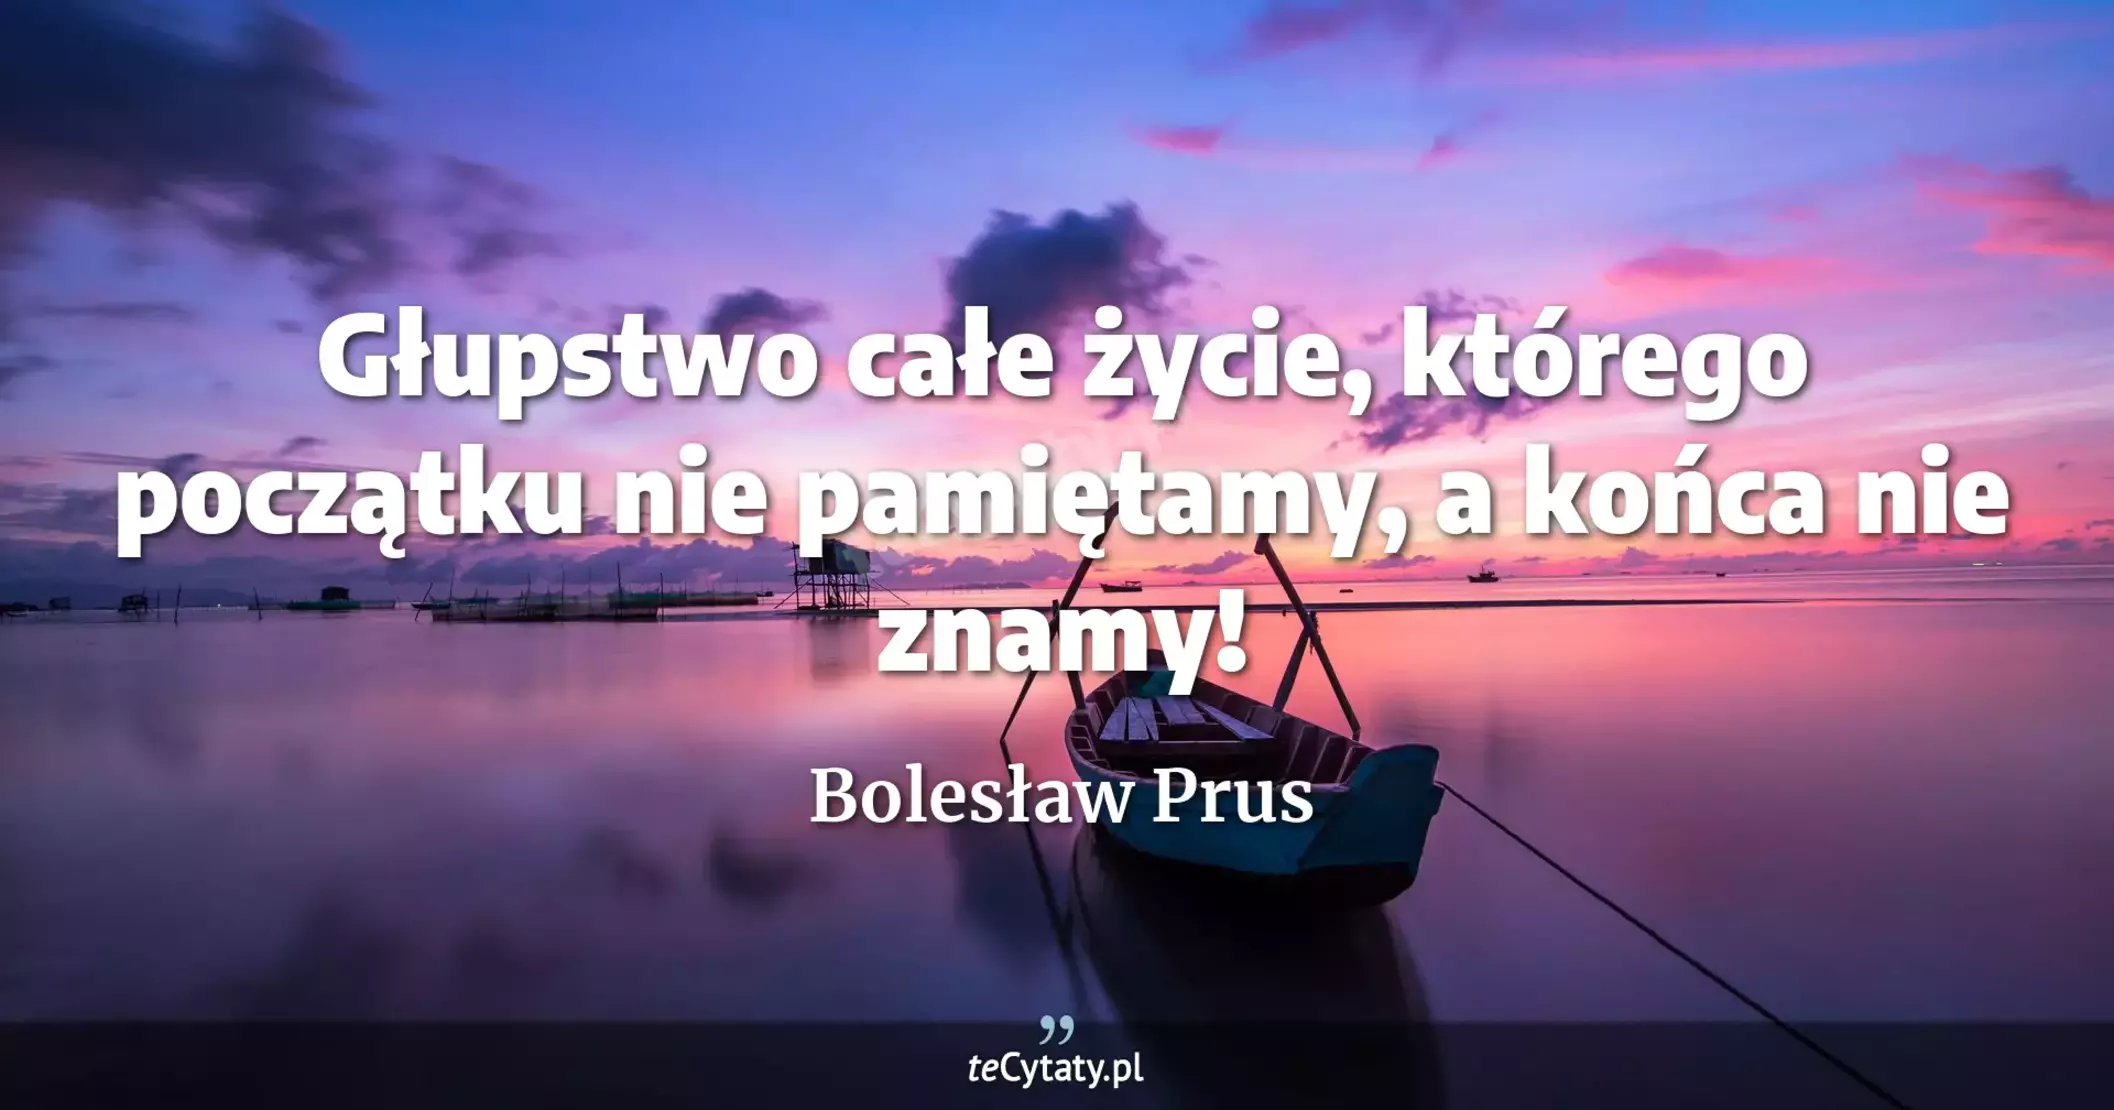 Głupstwo całe życie, którego początku nie pamiętamy, a końca nie znamy! - Bolesław Prus